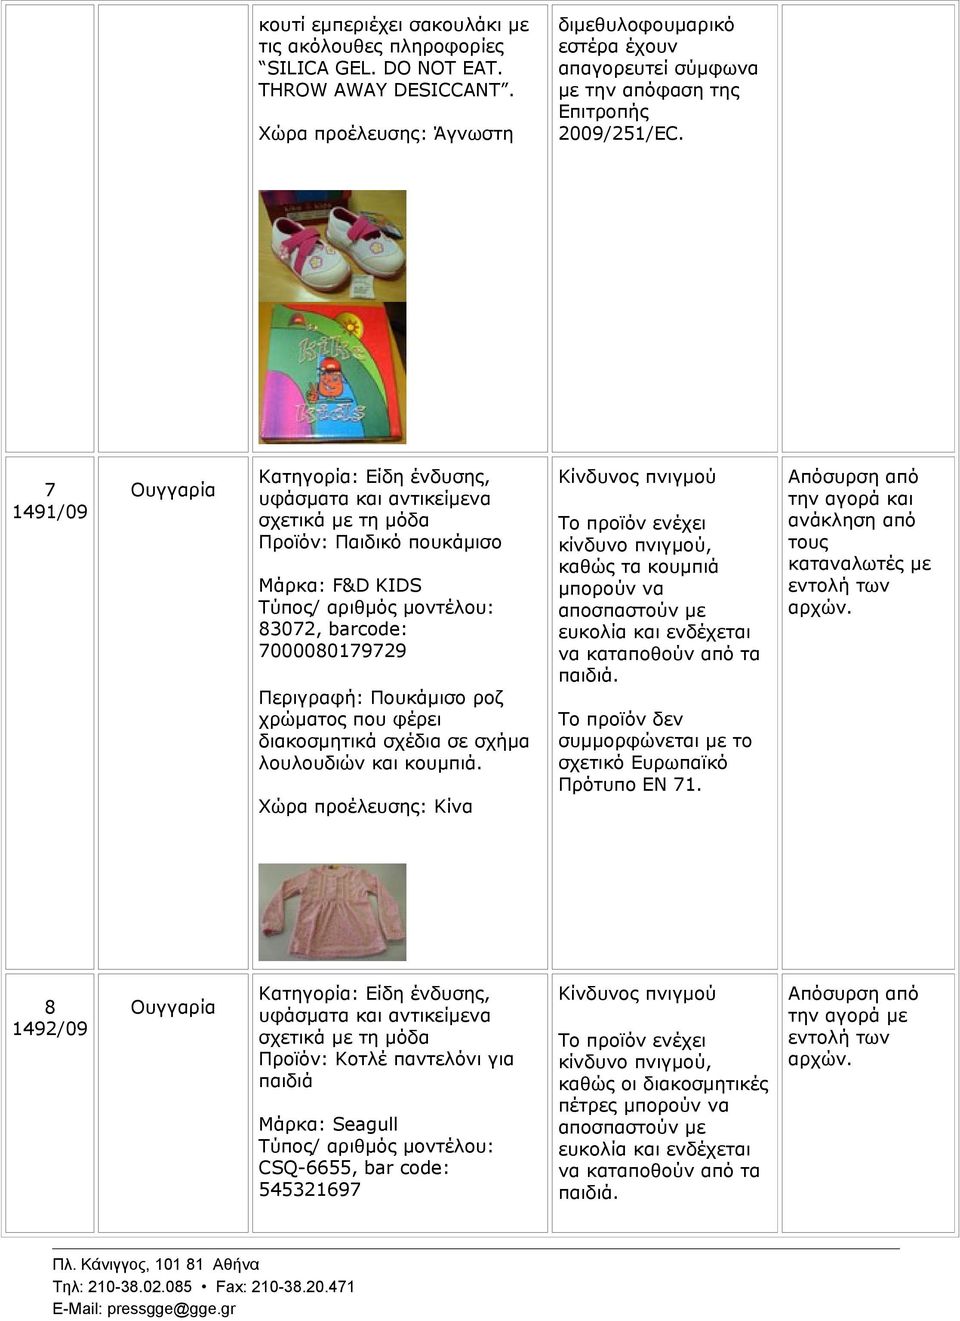 7 1491/09 Ουγγαρία Προϊόν: Παιδικό πουκάμισο Μάρκα: F&D KIDS 83072, barcode: 7000080179729 Περιγραφή: Πουκάμισο ροζ χρώματος που φέρει διακοσμητικά σχέδια σε σχήμα λουλουδιών και κουμπιά.